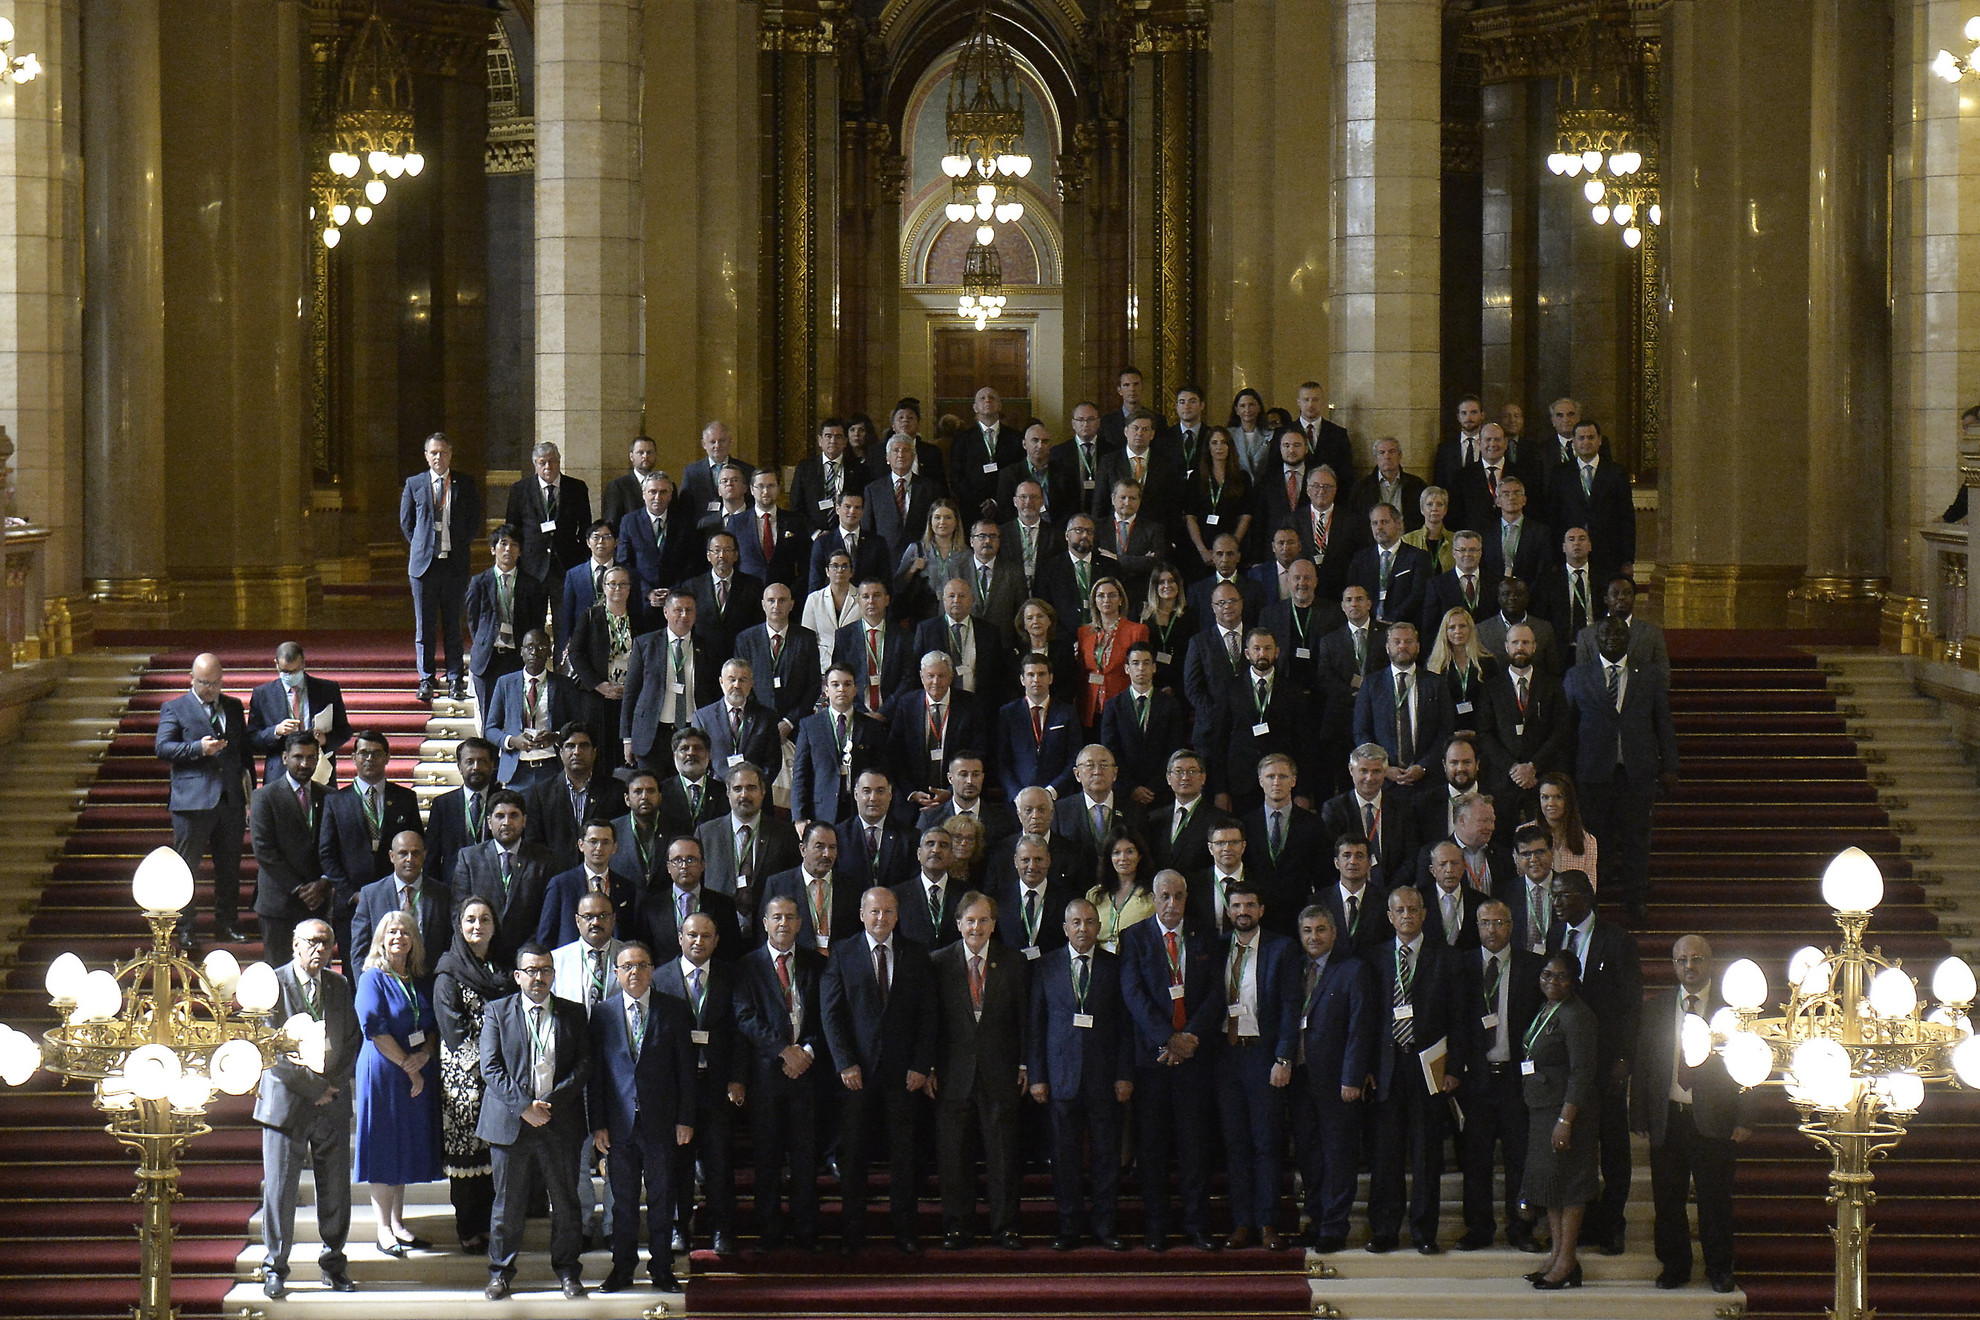 Családi fotó az Országházban rendezett Parlamenti Hírszerzési-Biztonsági Fórum résztvevőiről 2021. szeptember 6-án.